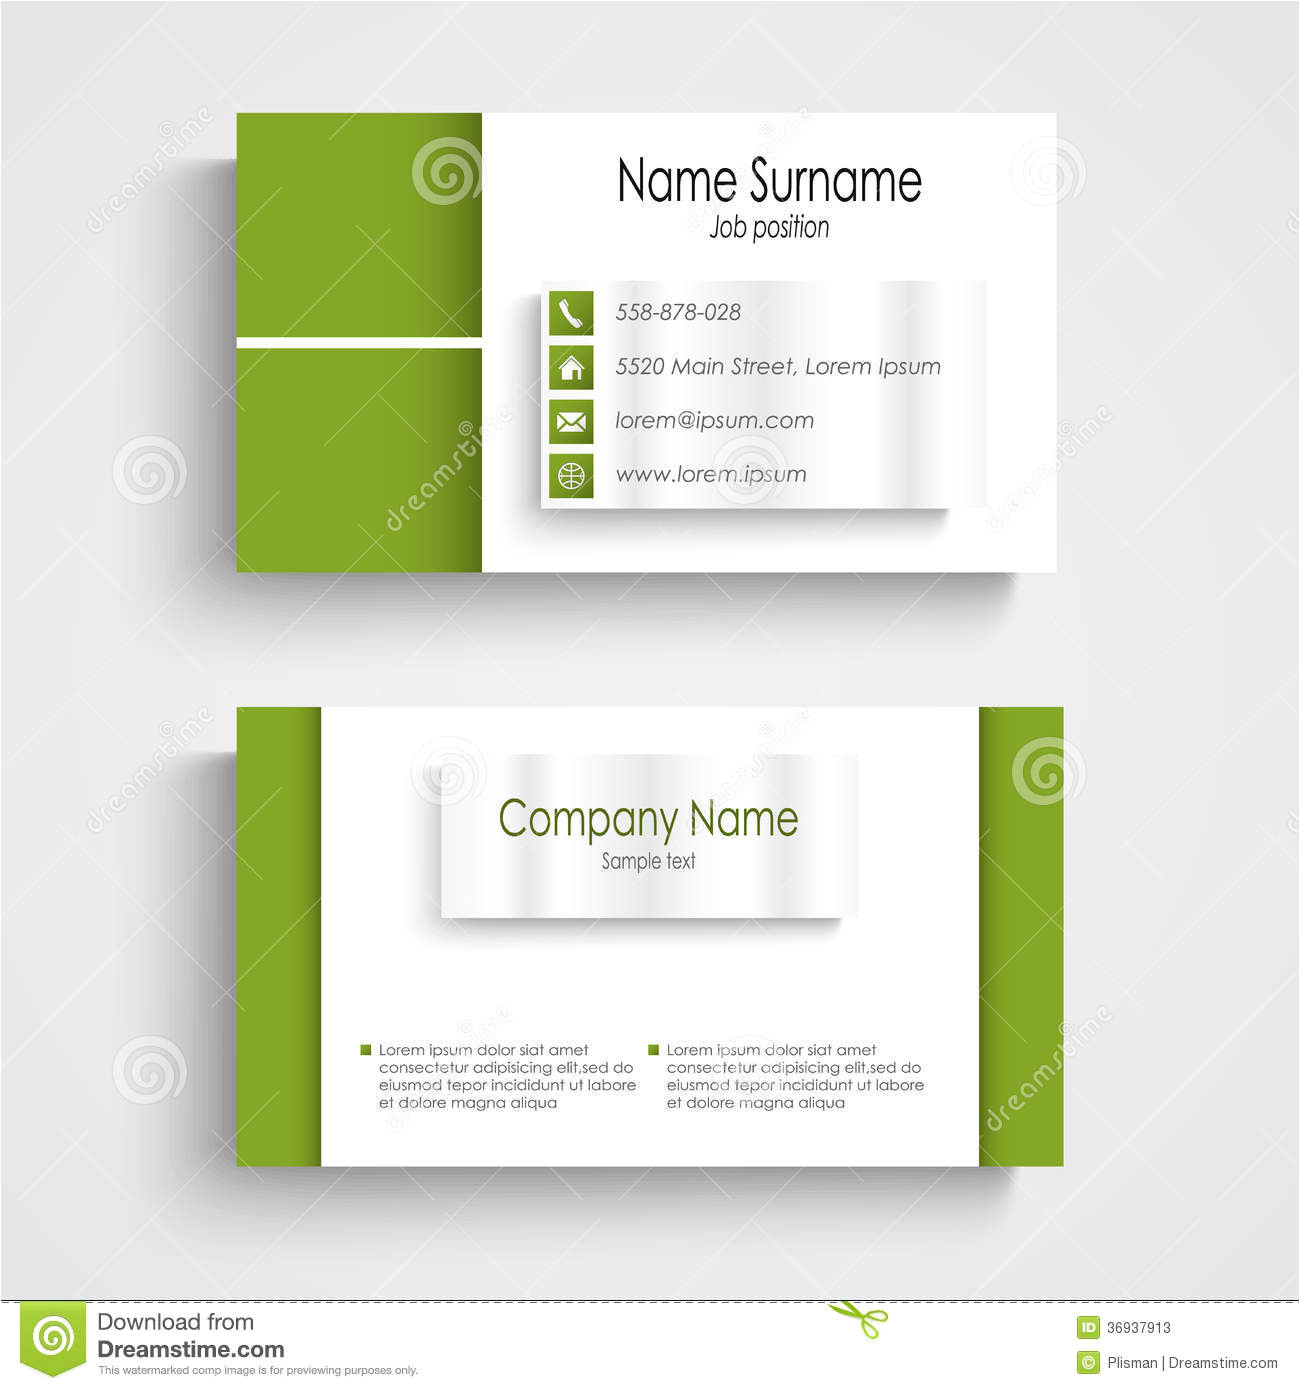 modern green light business card template vector eps 36937913 jpg